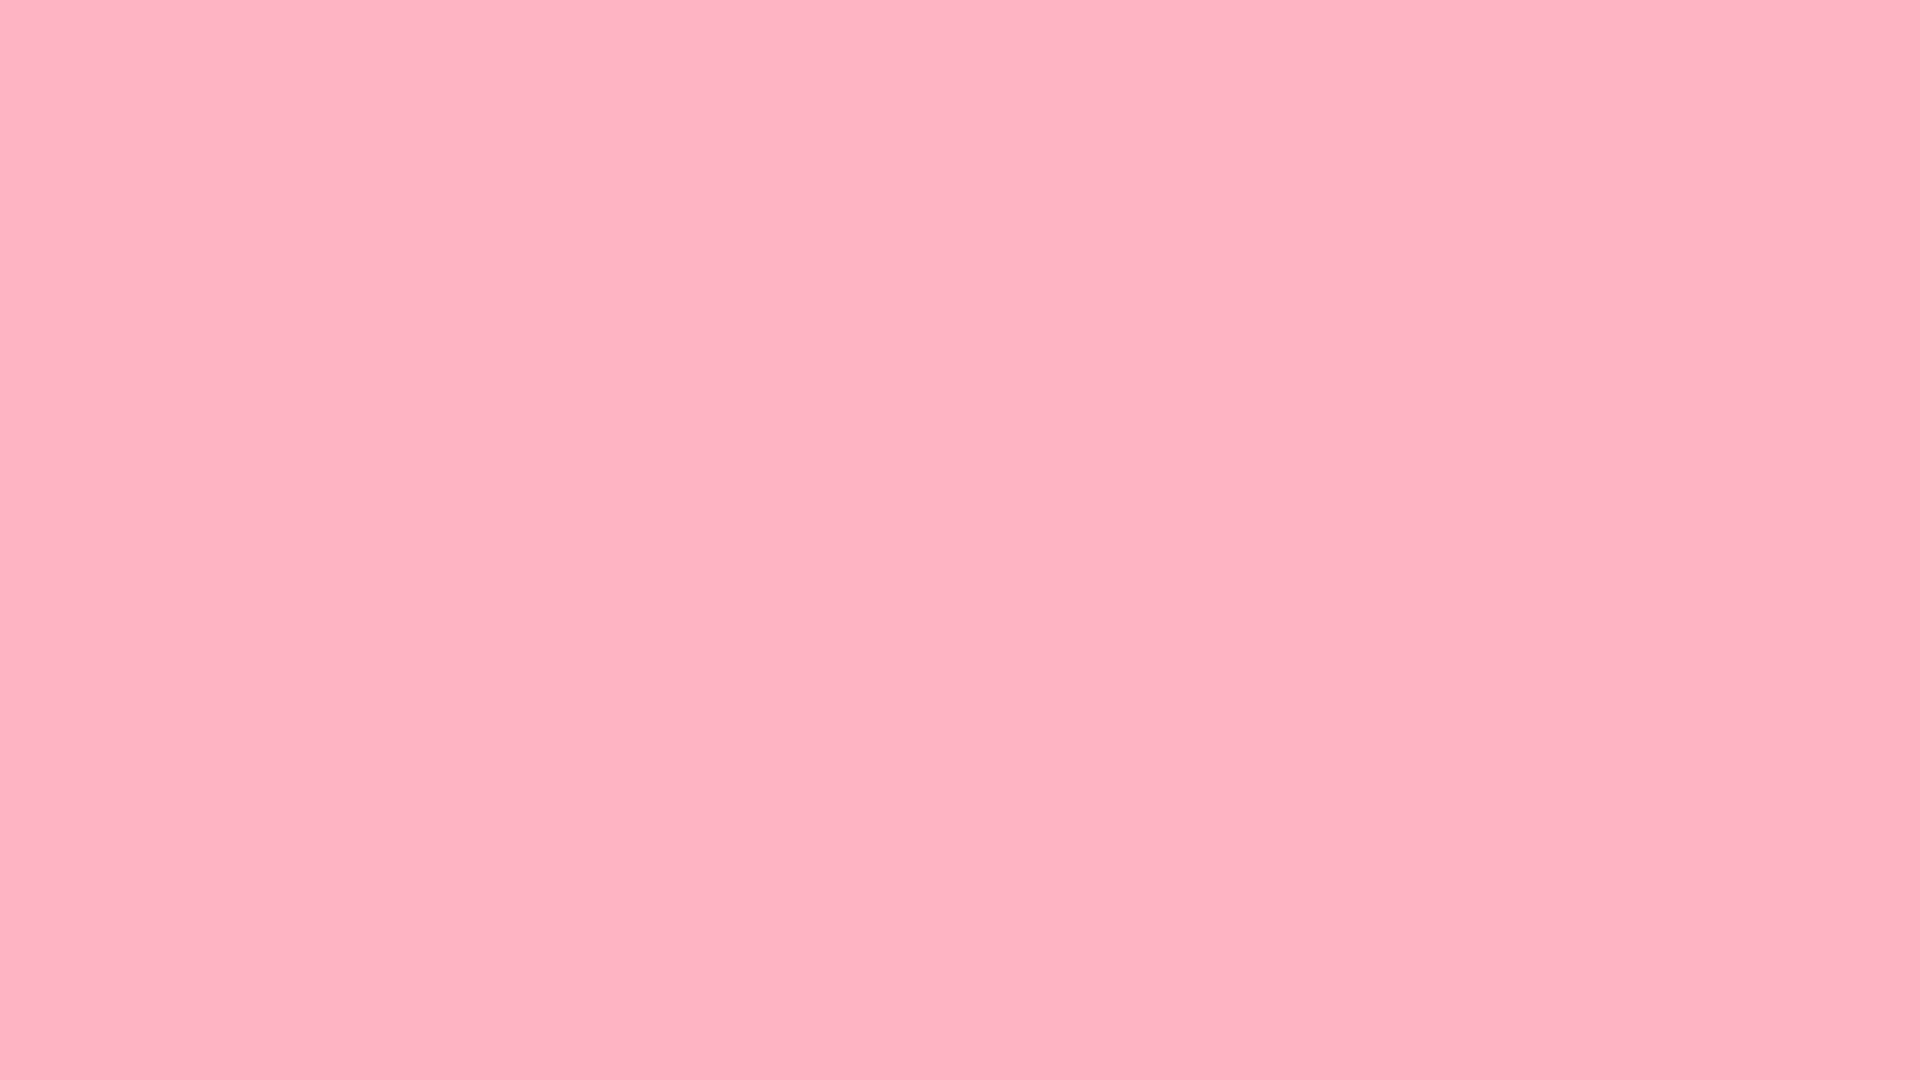 Soft Pink 2560 X 1440 Wallpaper